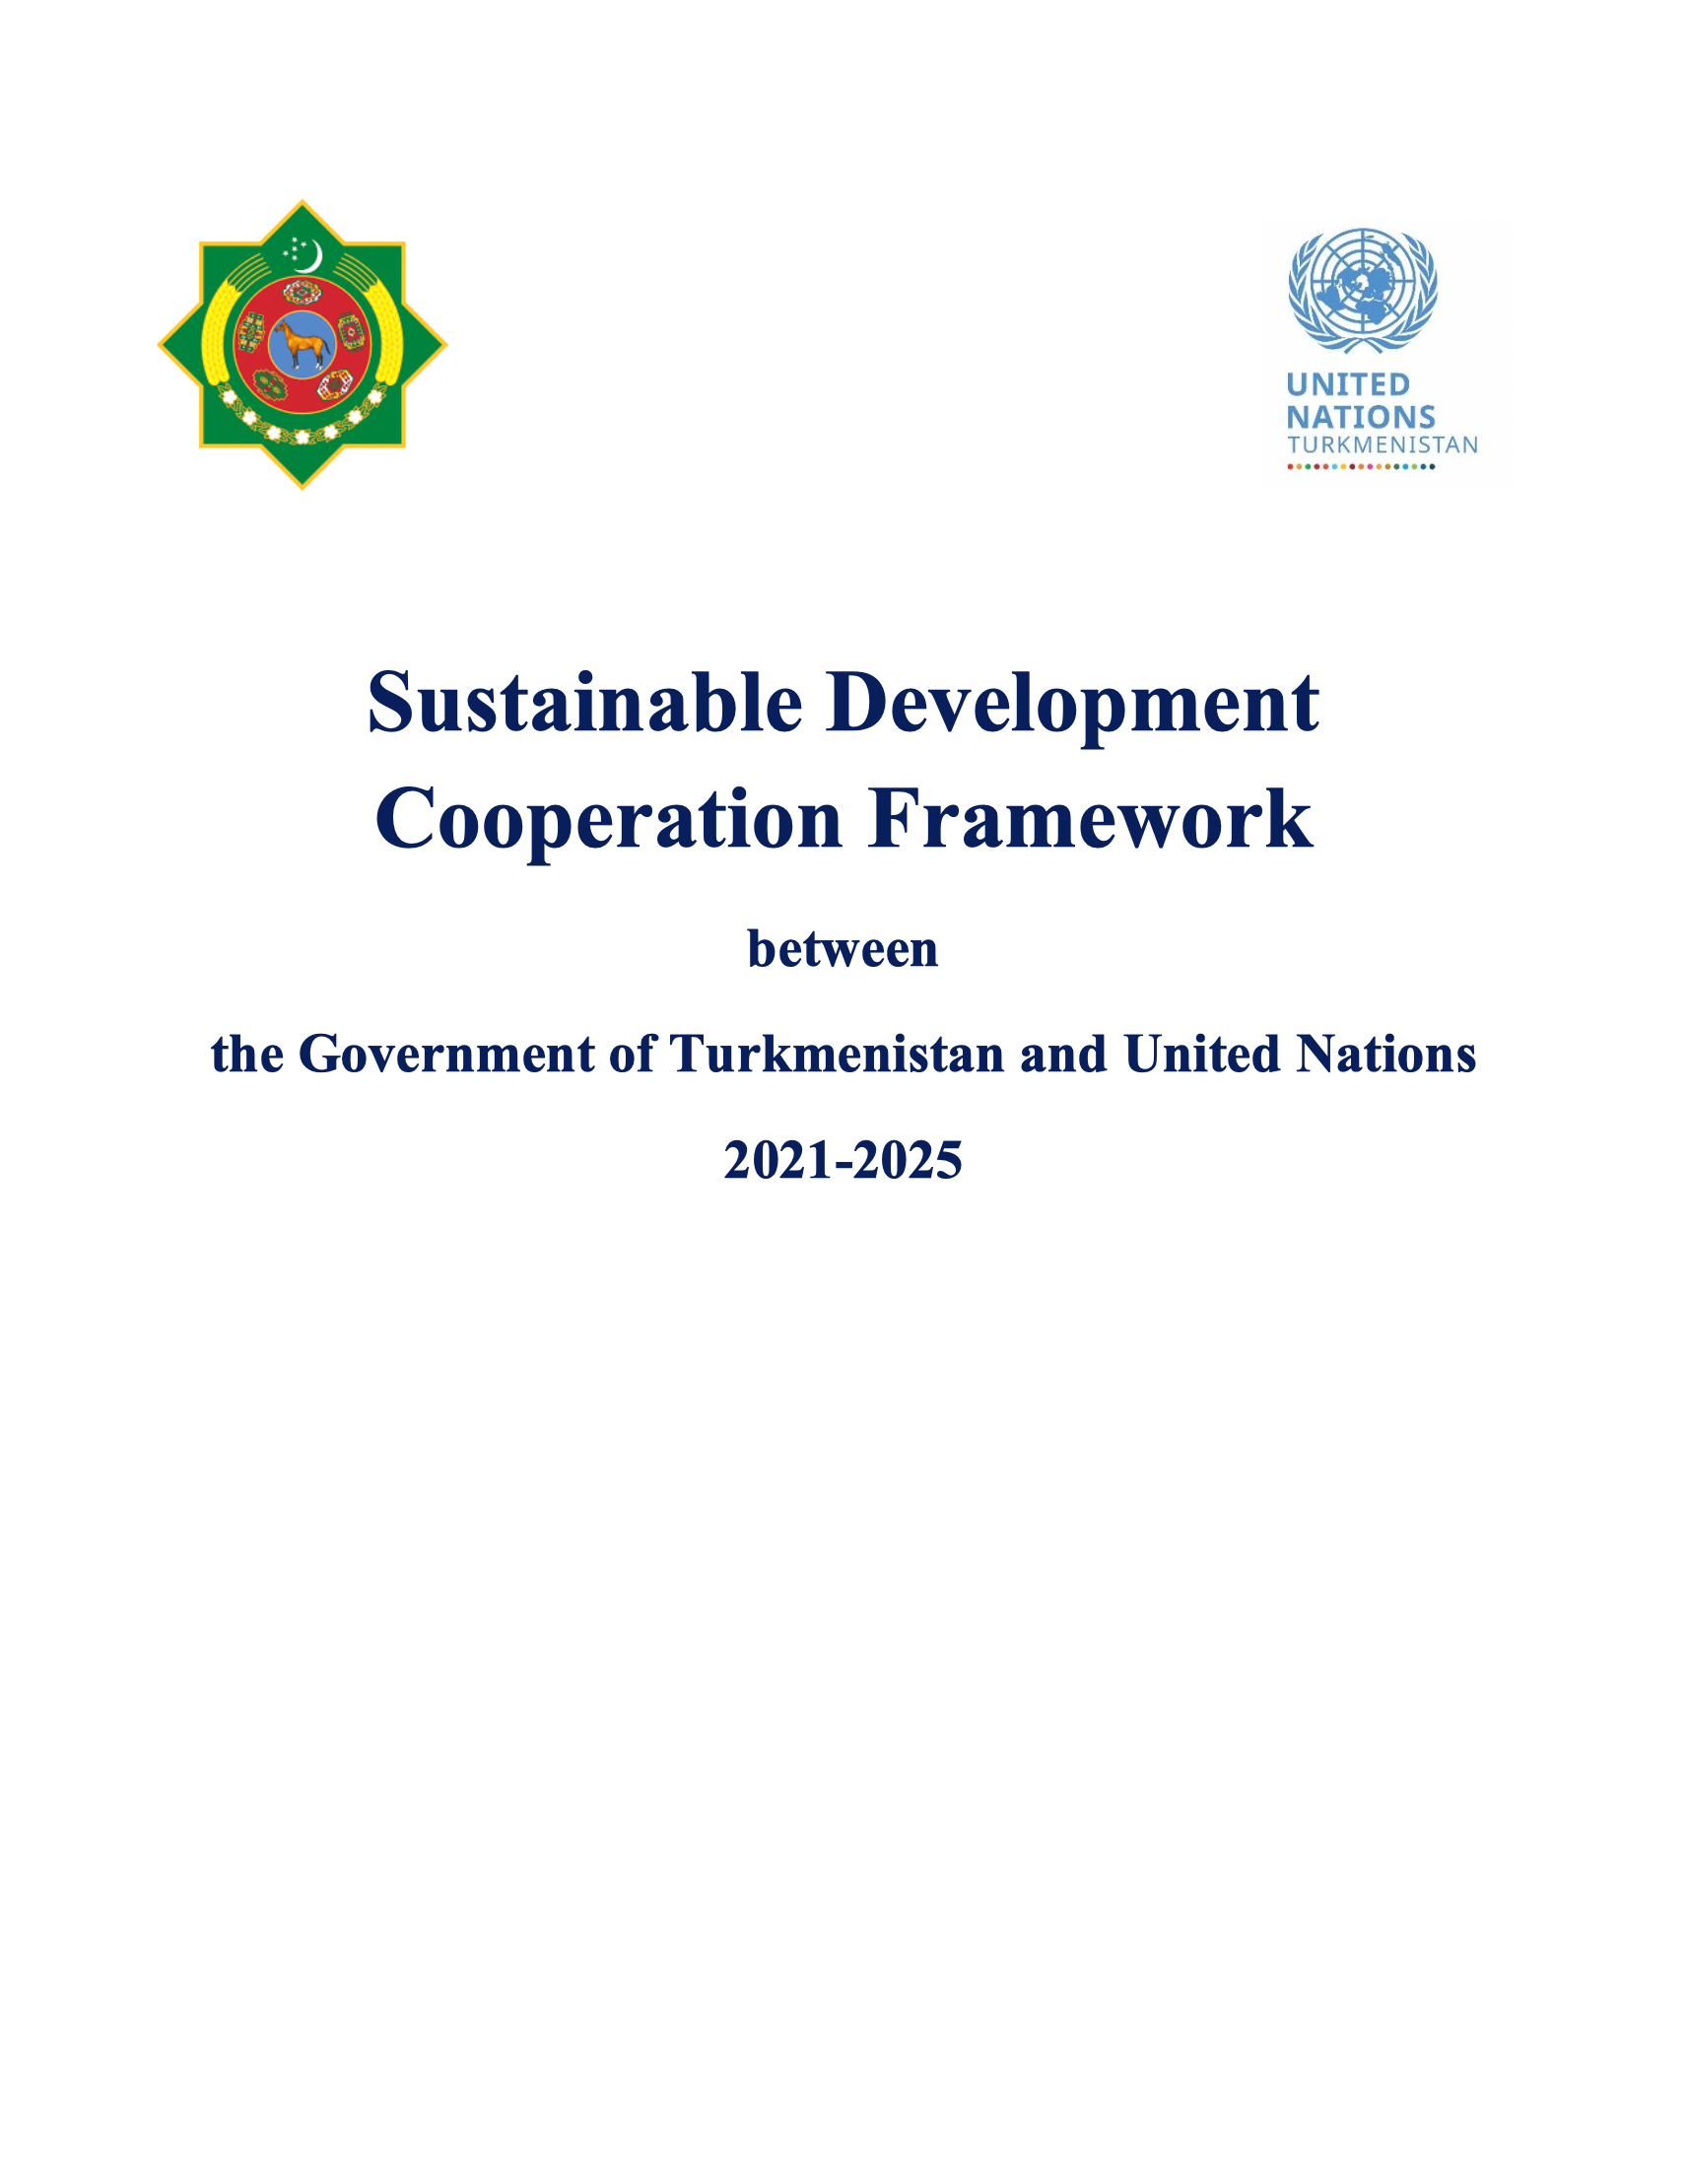 Рамочная программа сотрудничества в области устойчивого развития между Туркменистаном и Организацией Объединенных Наций на 2021-2025 гг.